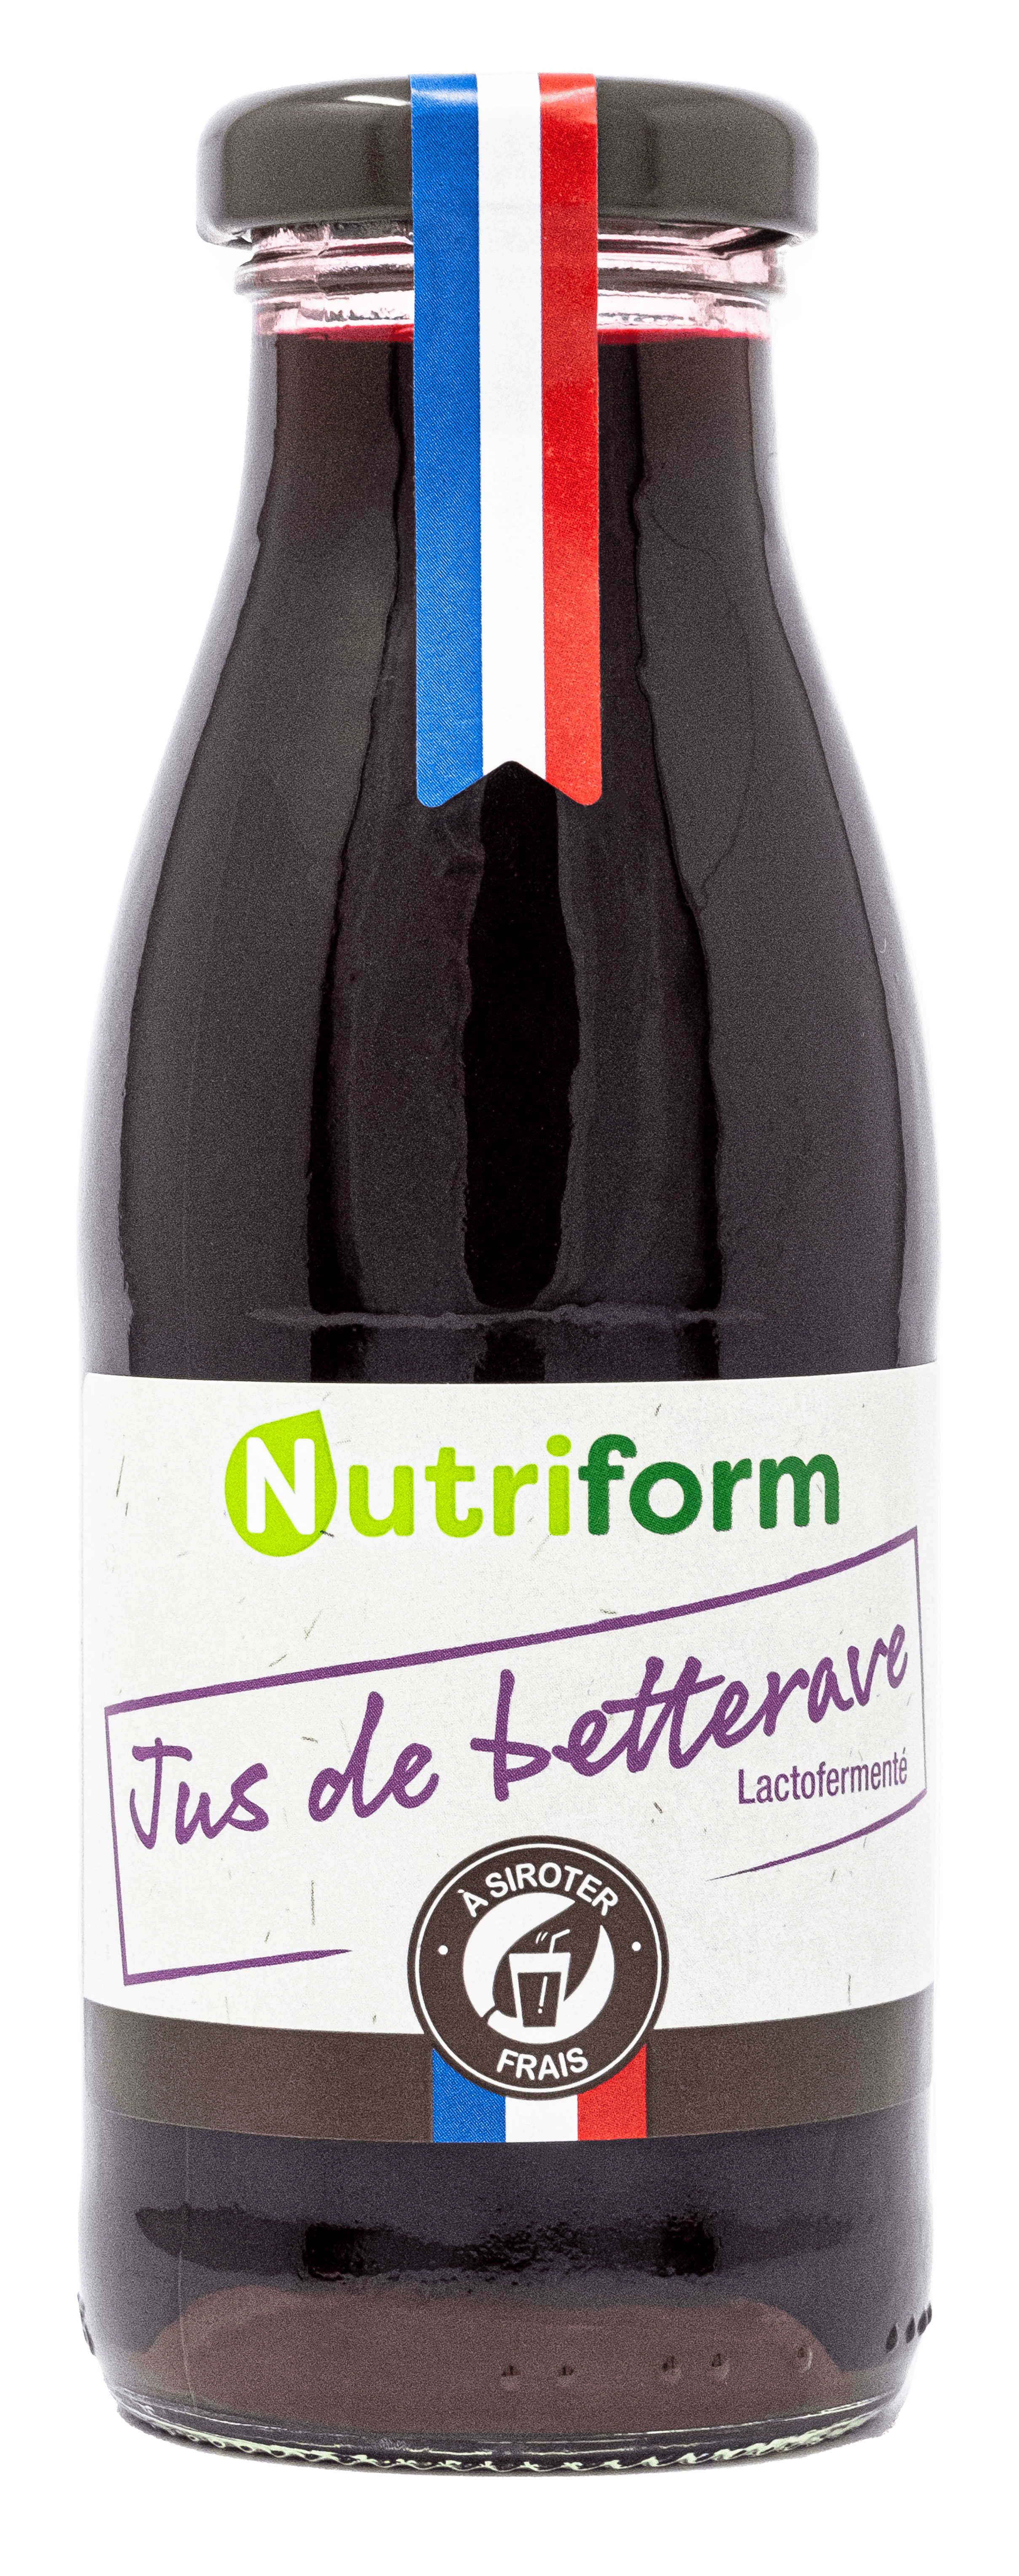 Jus de betterave lactofermenté lactofermentée - Nutriform légumes  lactofermentés Bio